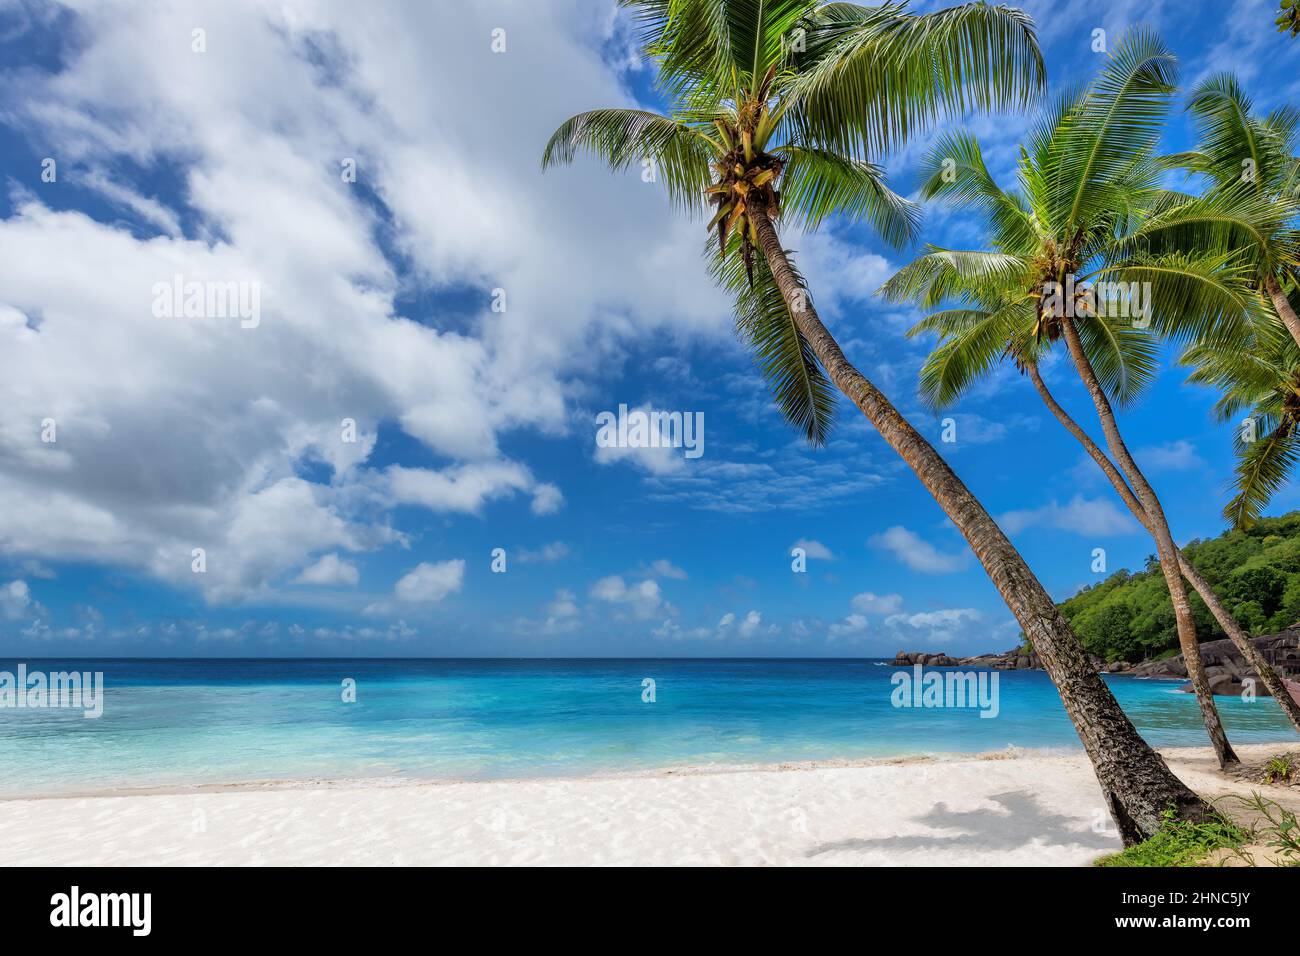 Pittoresque plage tropicale de palmiers avec coco-palmiers, ciel bleu et mer turquoise dans les Caraïbes Banque D'Images